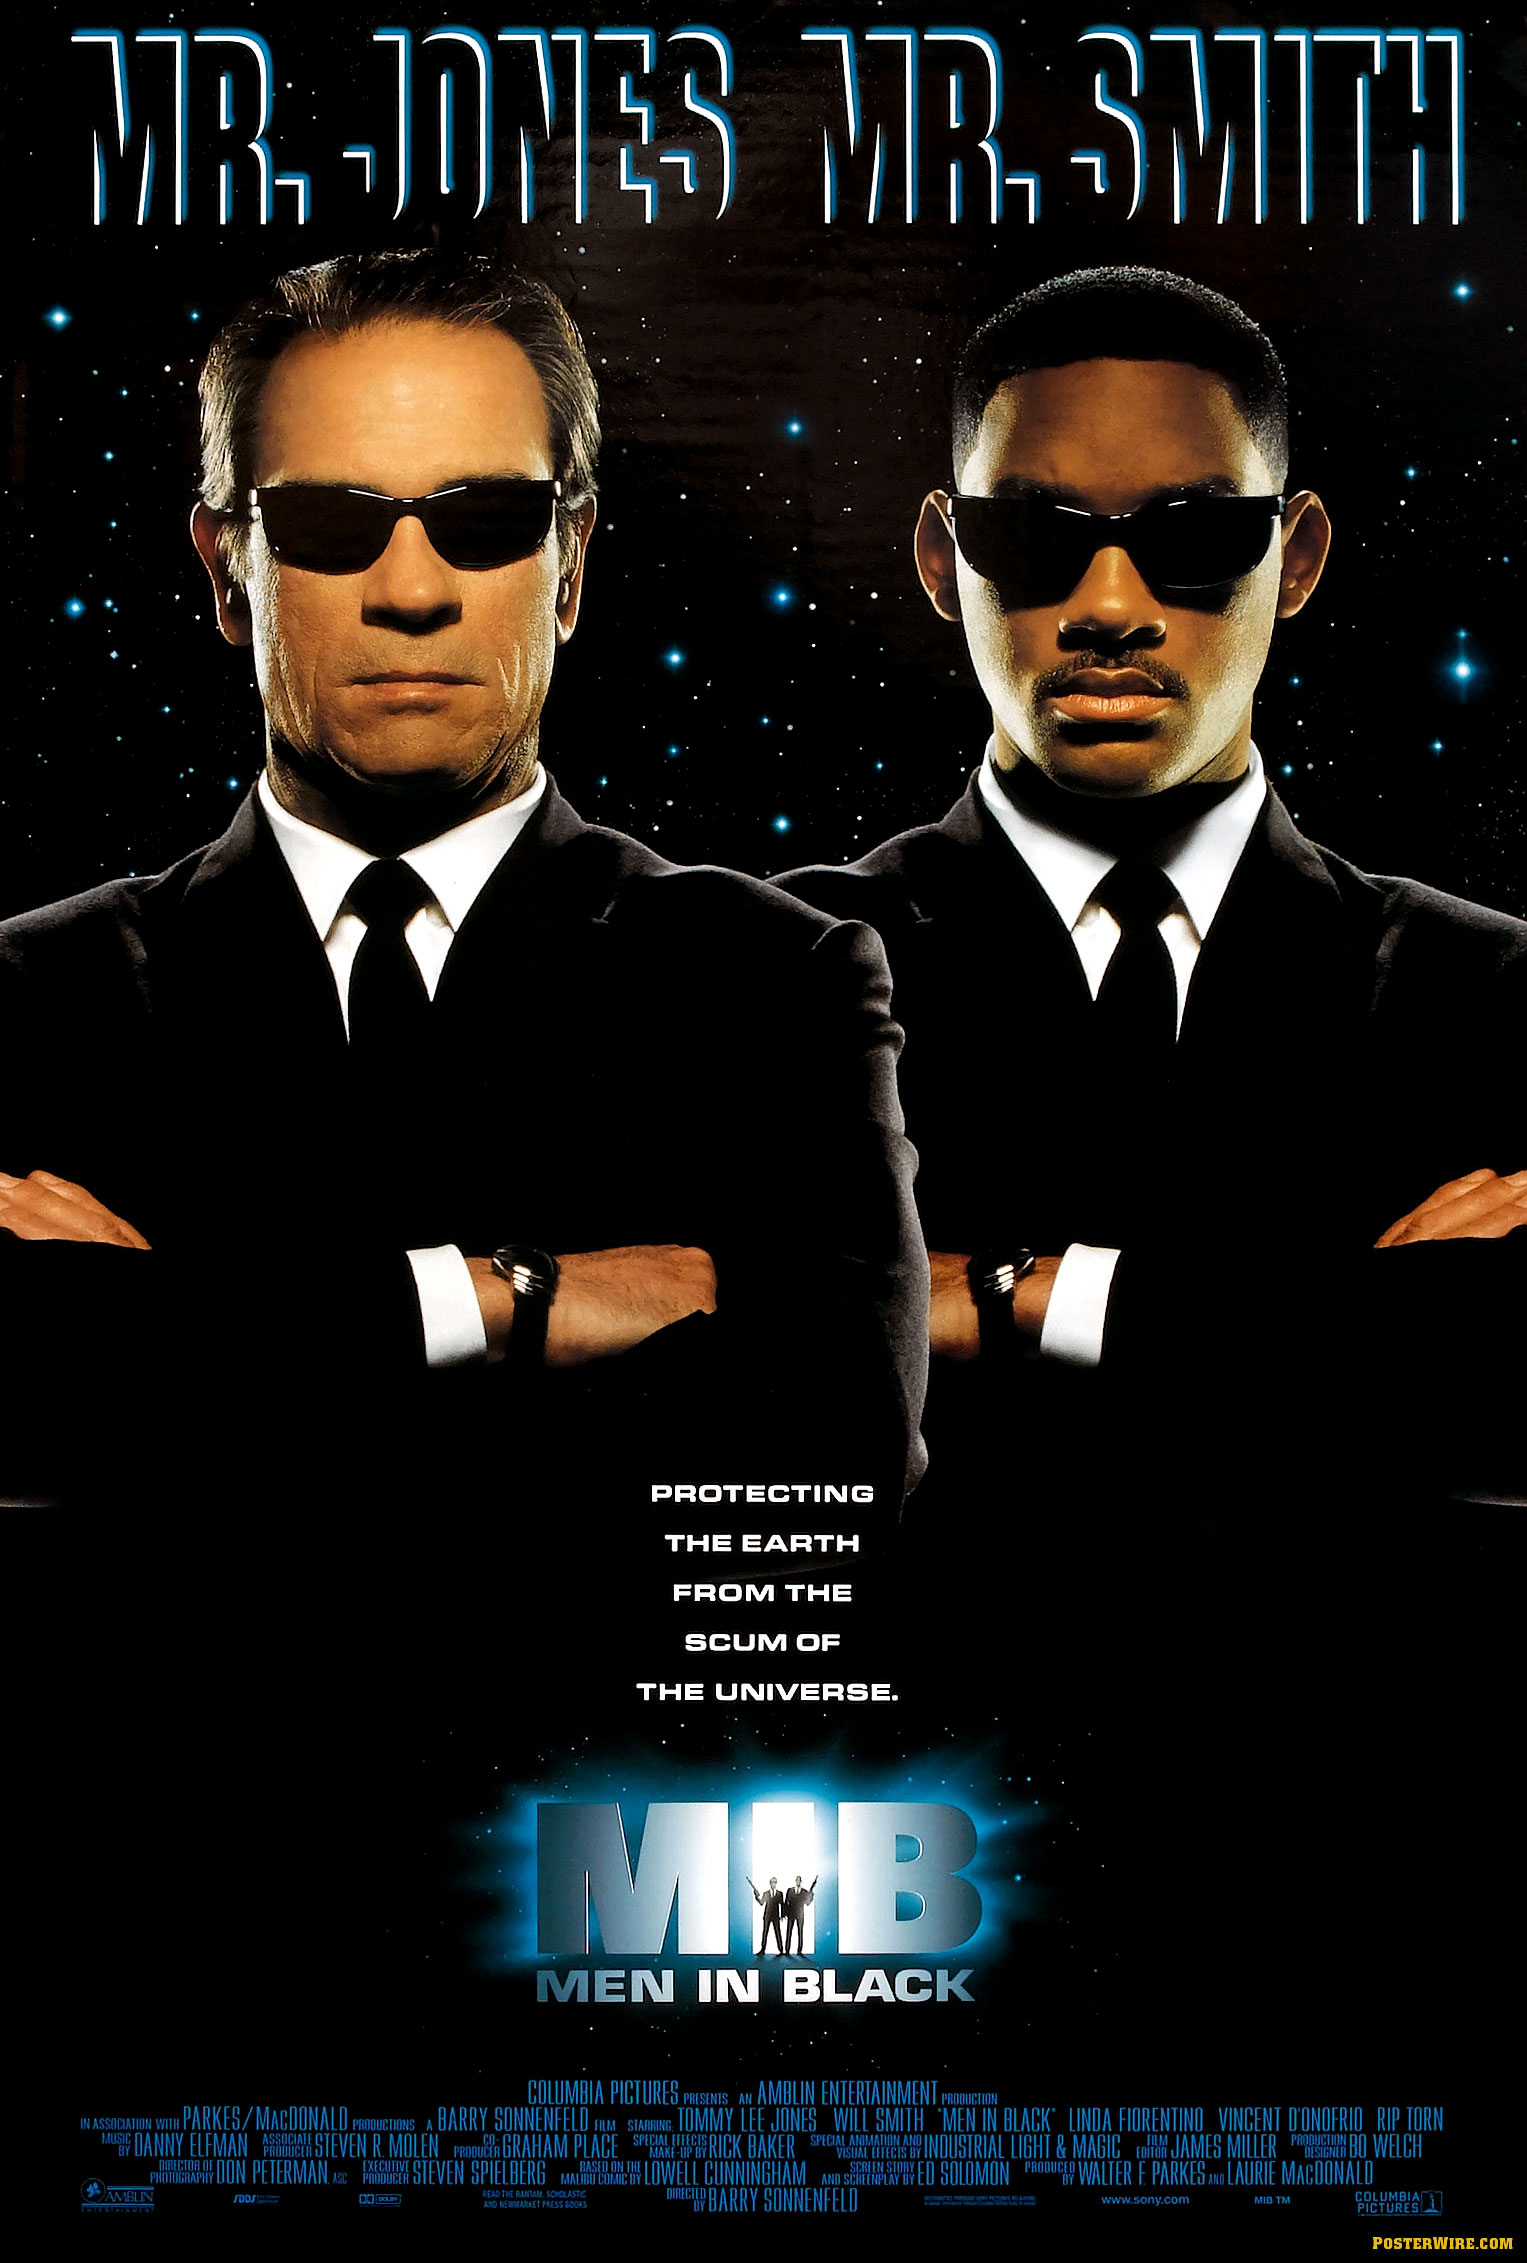 Men in Black MIB movie poster